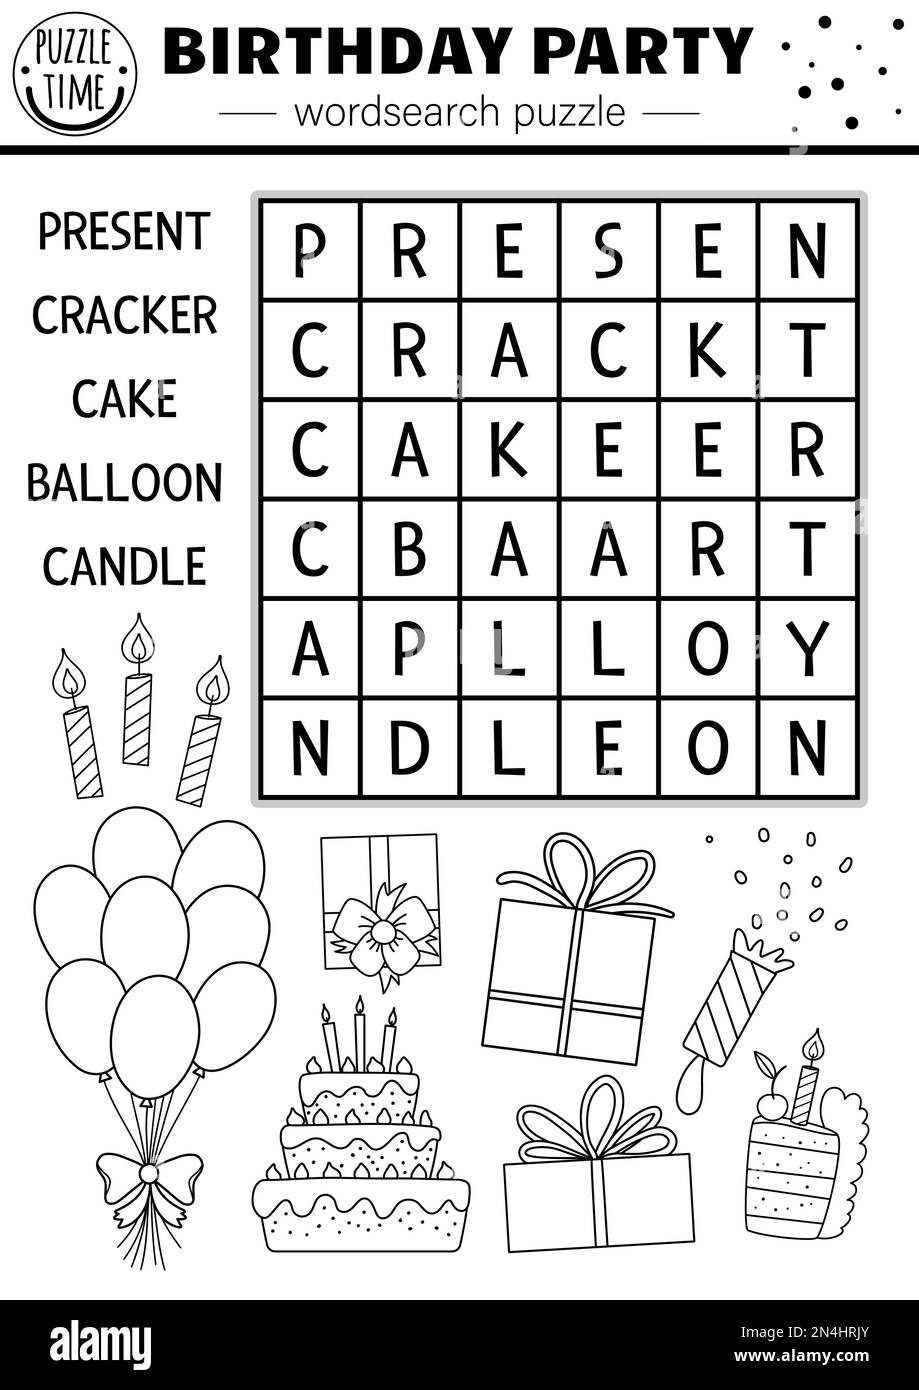 Vector schwarz-weiß Geburtstagsparty Wortsuche Puzzle für Kinder. Einfaches Kreuzworträtsel mit Geschenk, Kuchen, Ballon, Kerze. Pädagogischer Jahrestag Stock Vektor